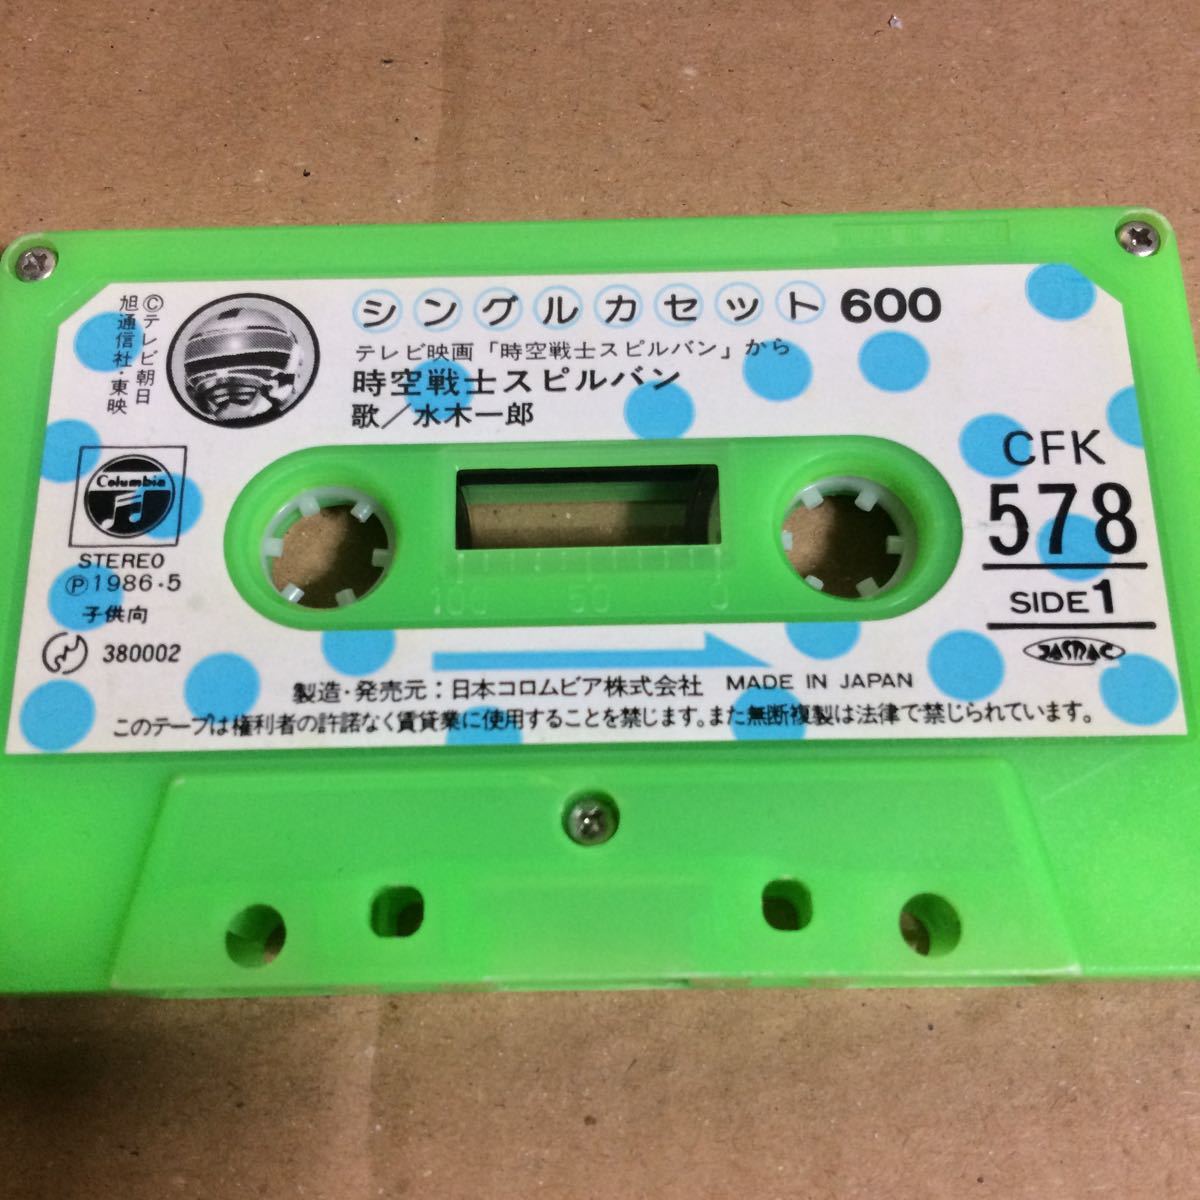 C0130) одиночный кассета 600 Jikusenshi Spielban 